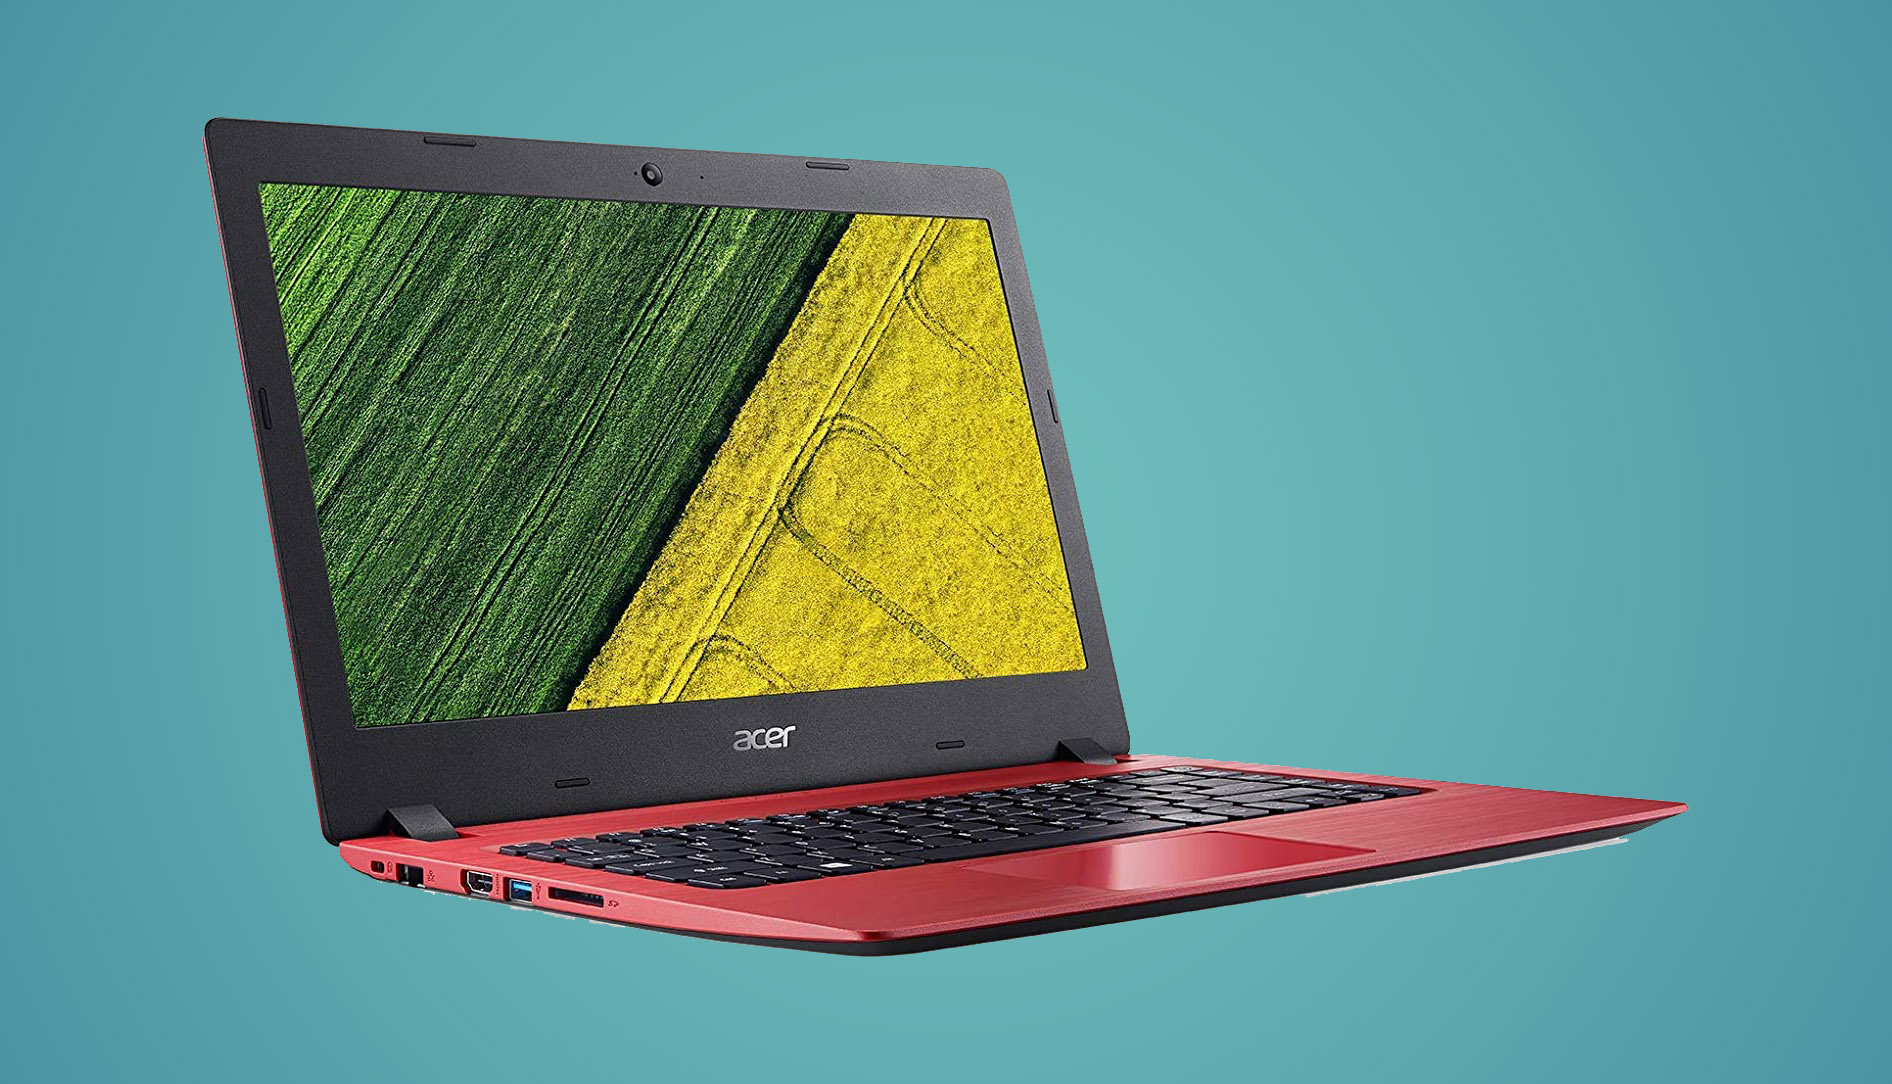 Punto granero Mucama Este portátil Acer Aspire 1 solo cuesta 180€ con envío gratis y es perfecto  para navegar o estudiar | Computer Hoy